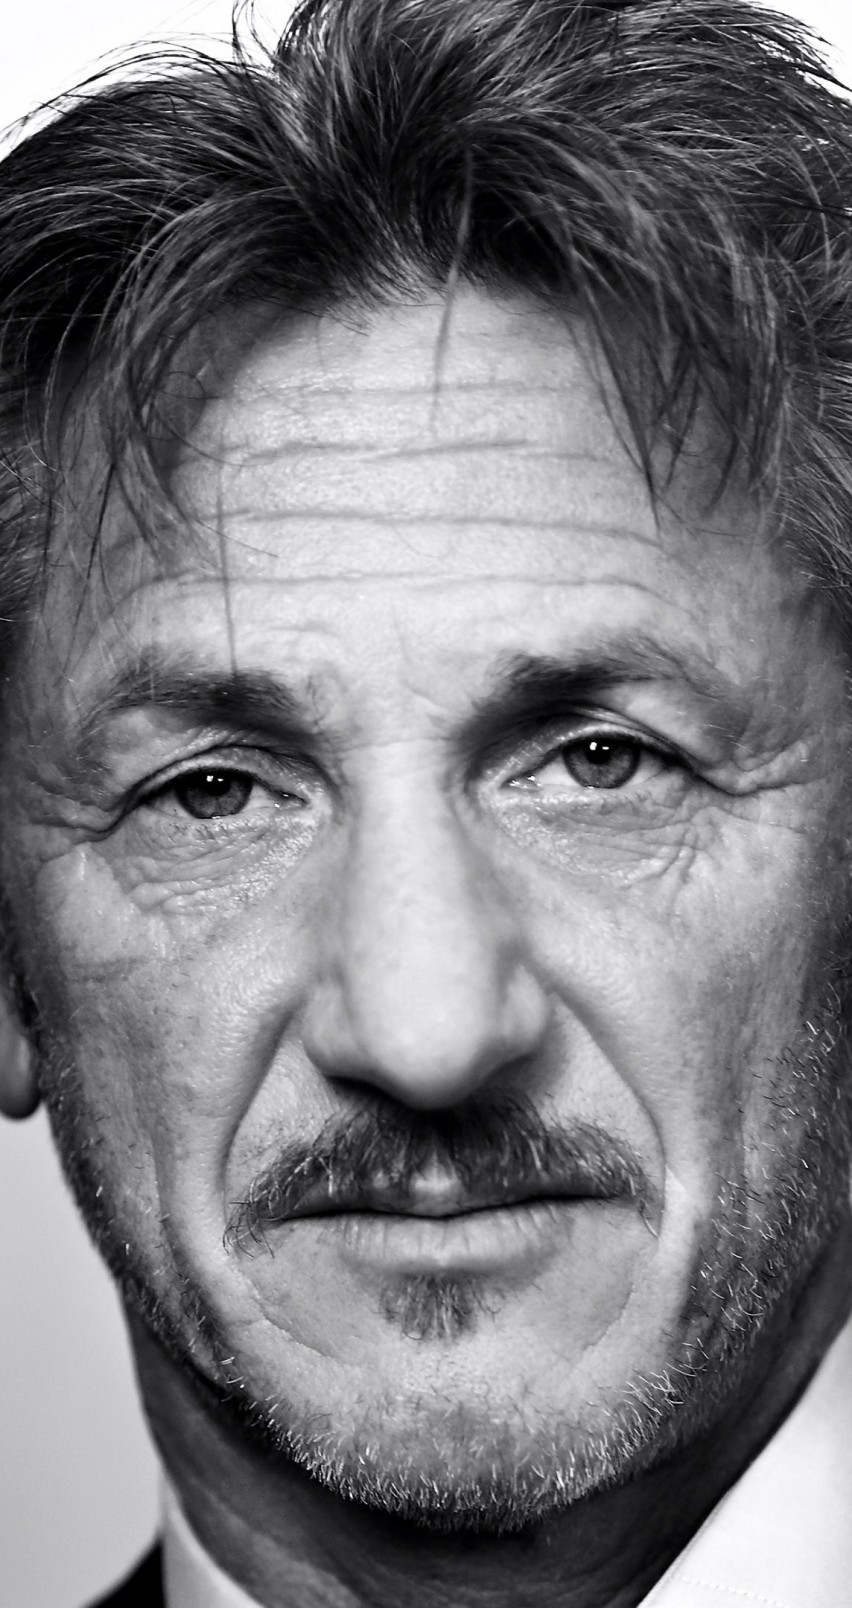 Sean Penn Portrait in Black & White Wallpaper for Apple iPhone 6 / 6s